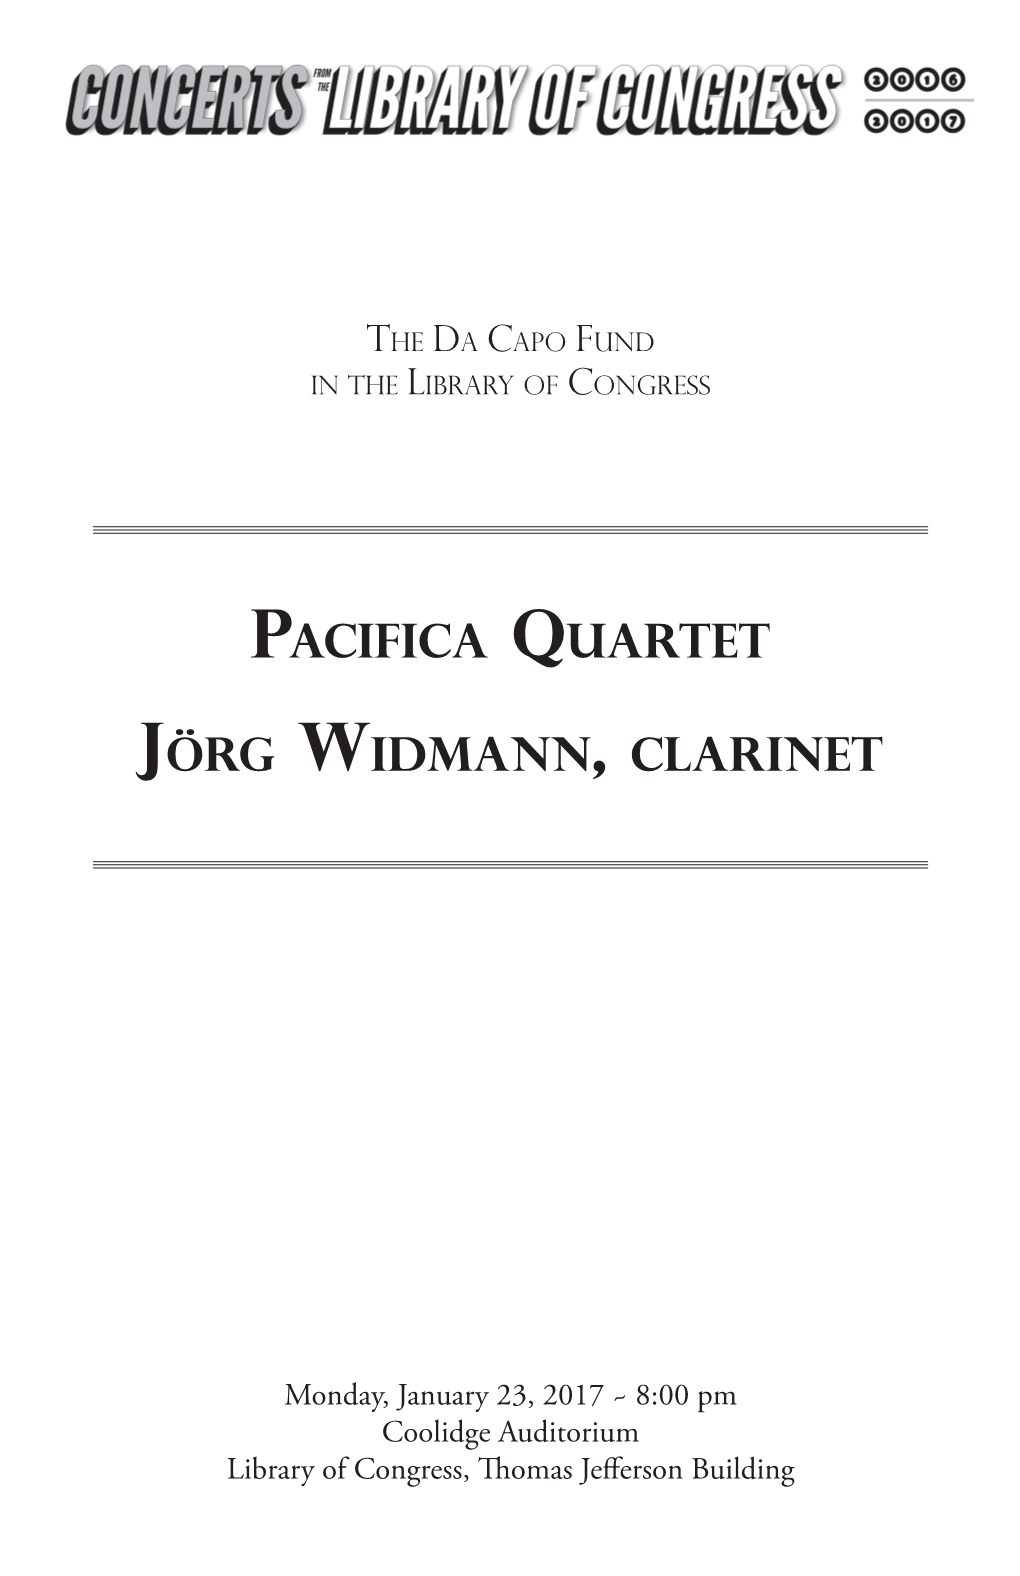 Pacifica Quartet Jörg Widmann, Clarinet